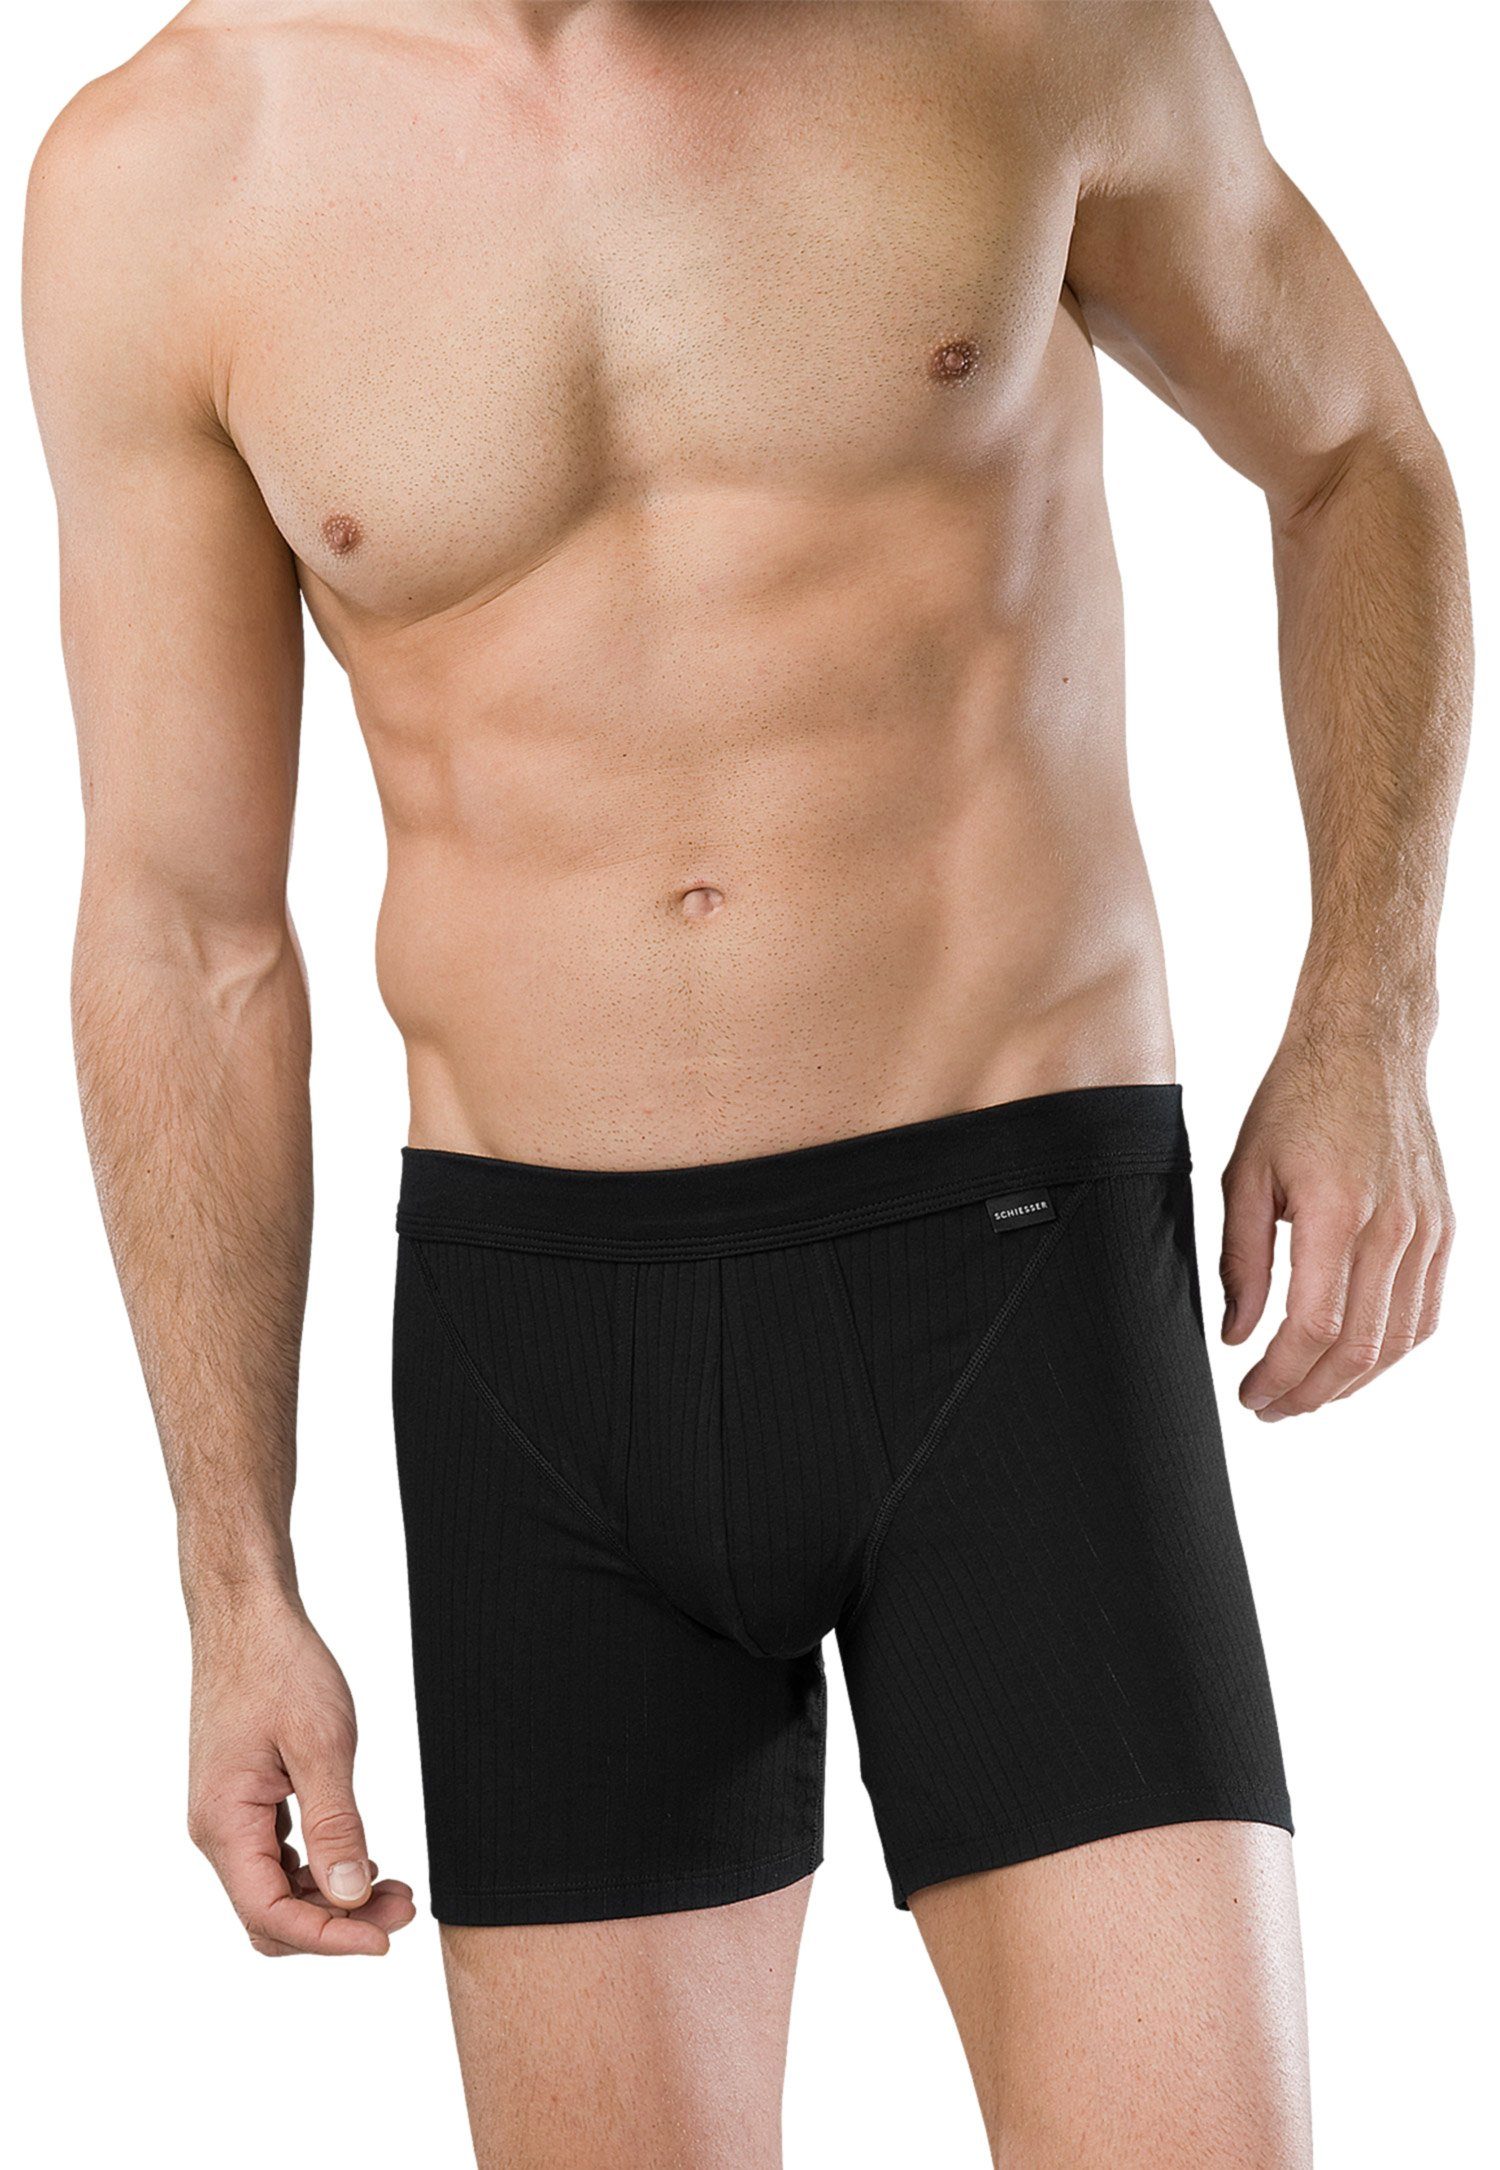 Wäsche/Bademode Boxershorts Schiesser Boxershorts Cotton Essentials Authentic (2 Stück) Herren Shorts im Doppelpack